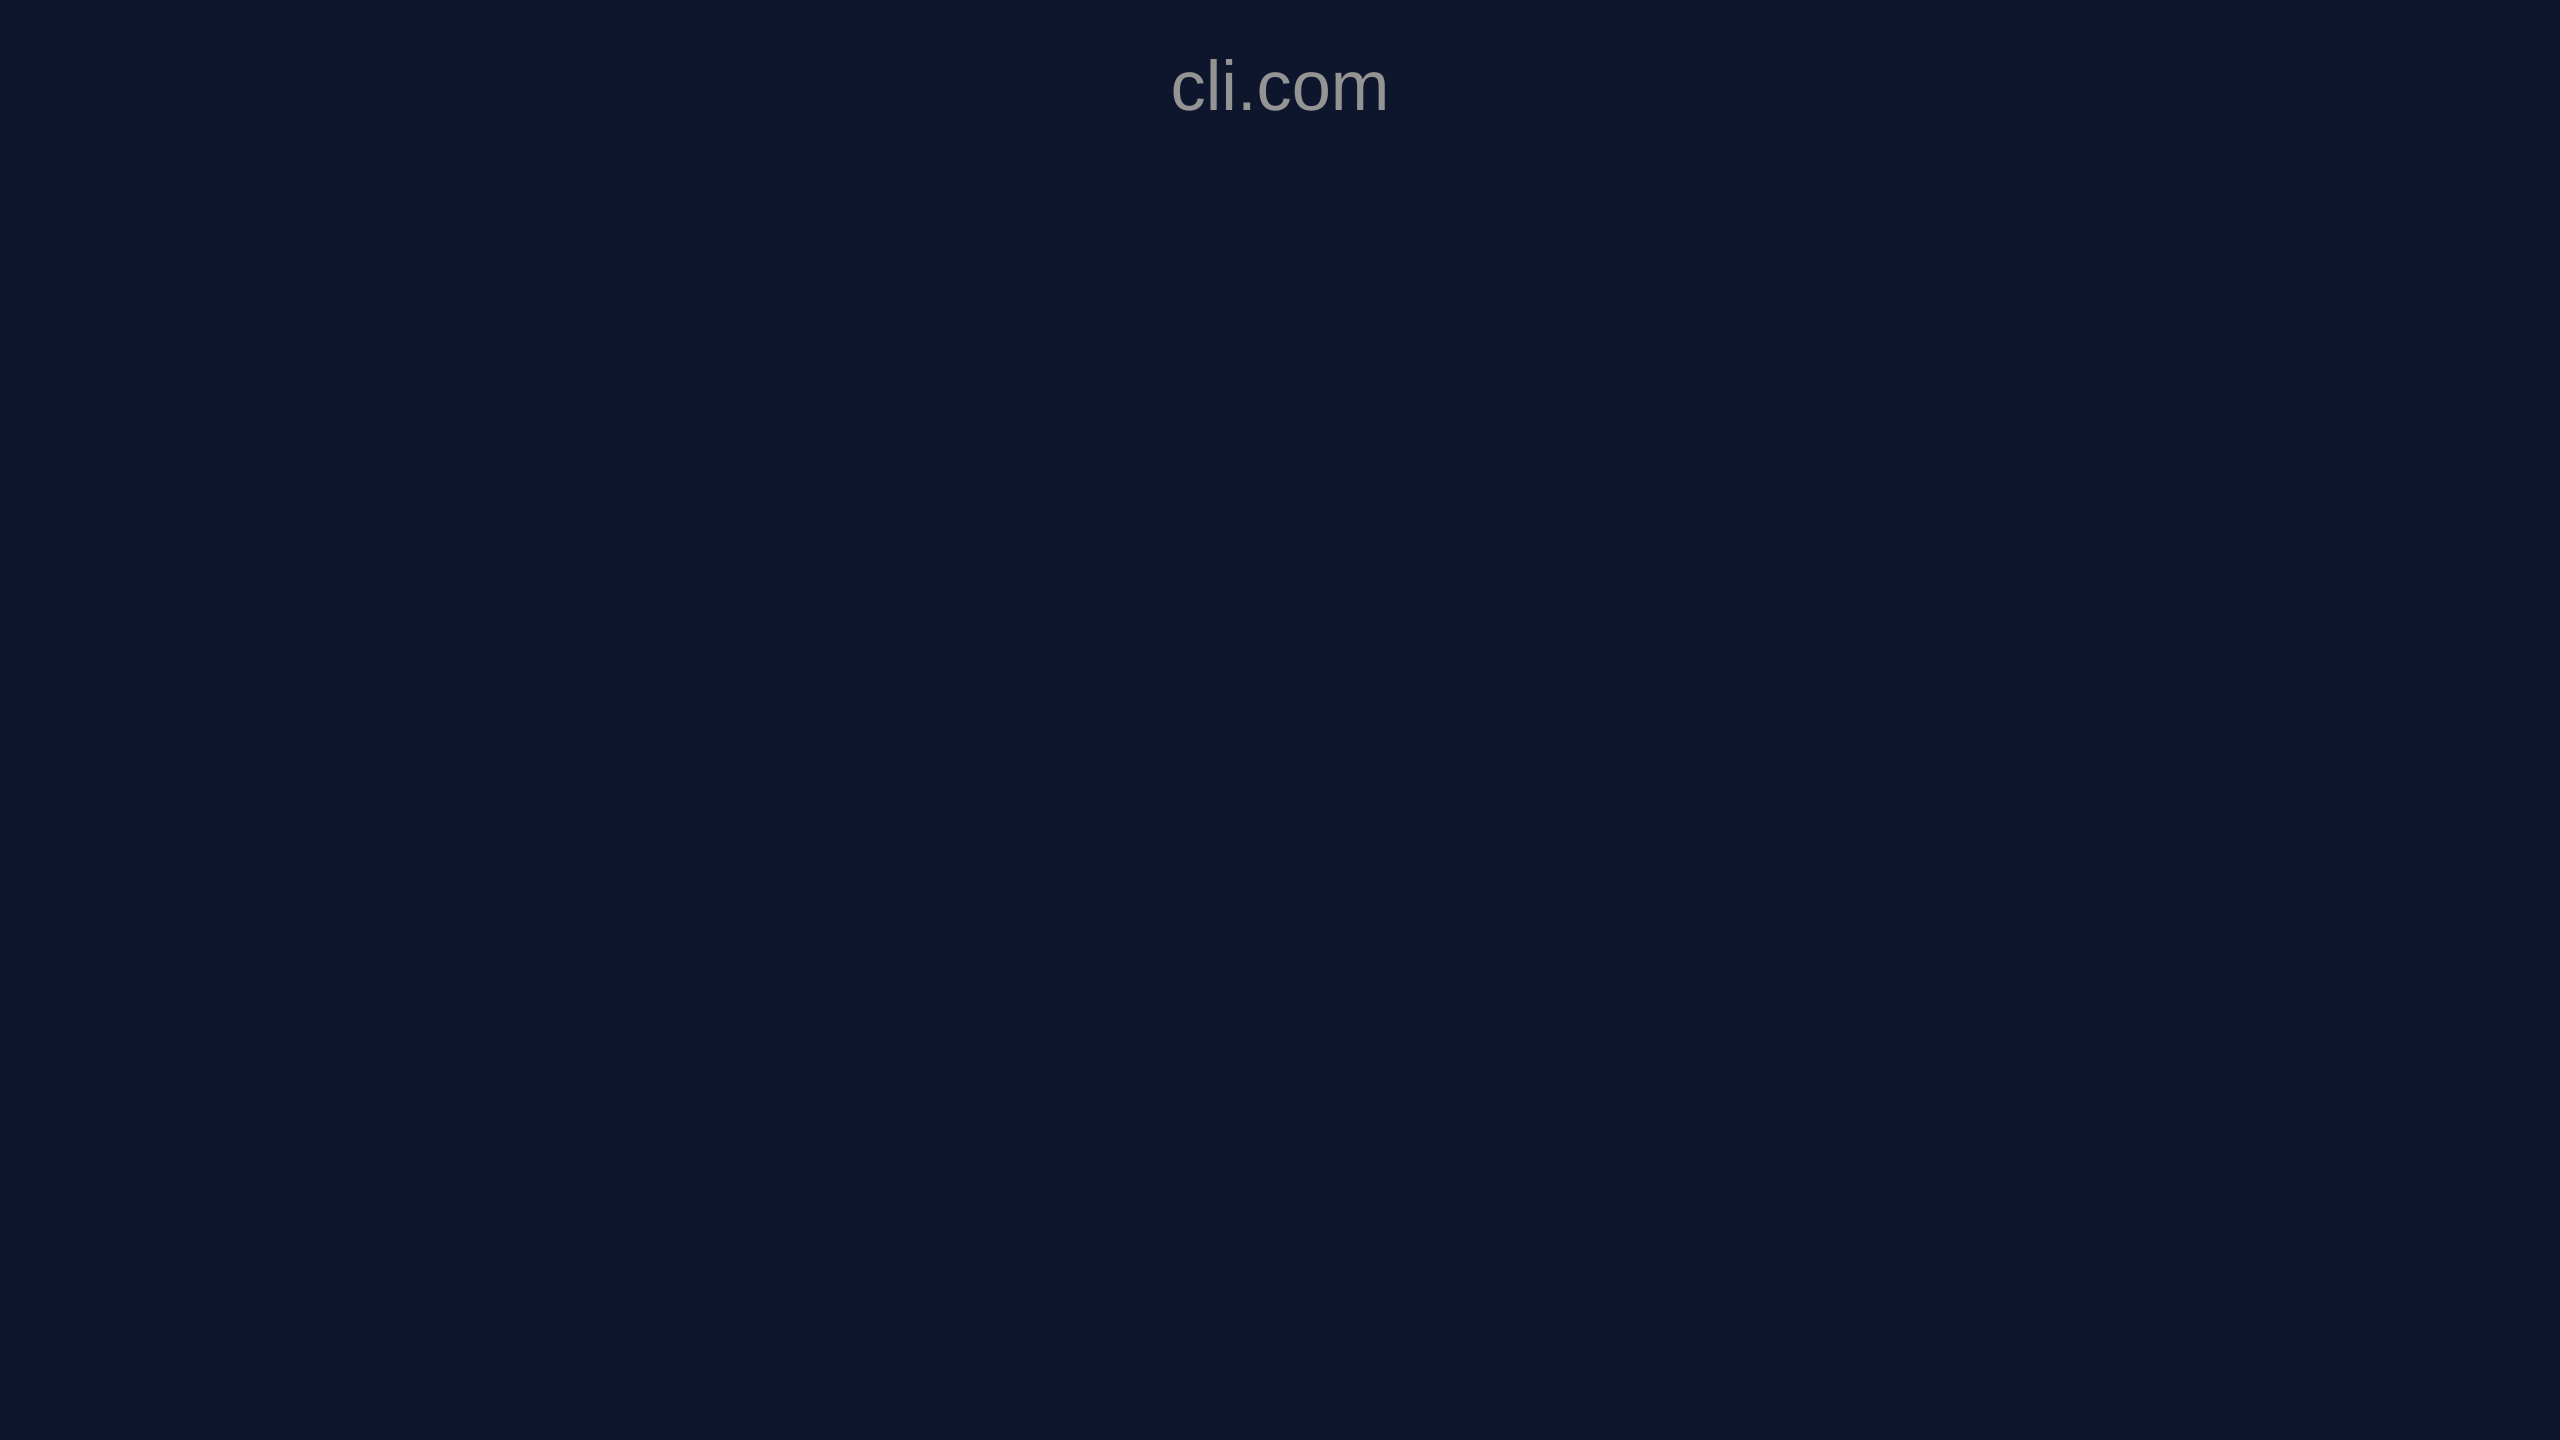 Clico's website screenshot